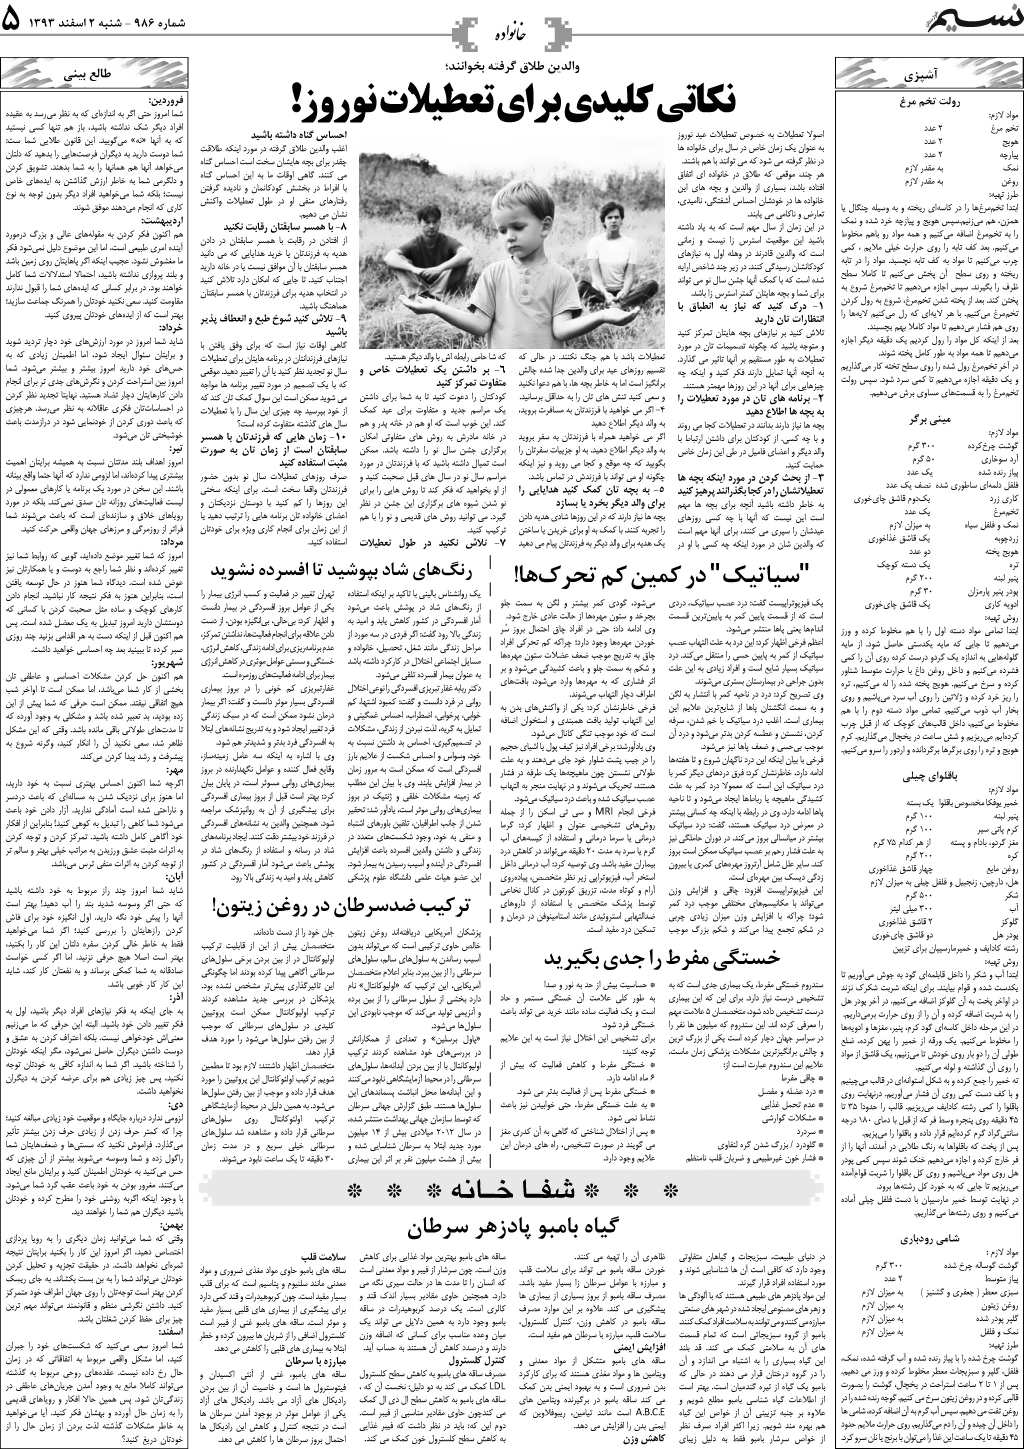 صفحه خانواده روزنامه نسیم شماره 986